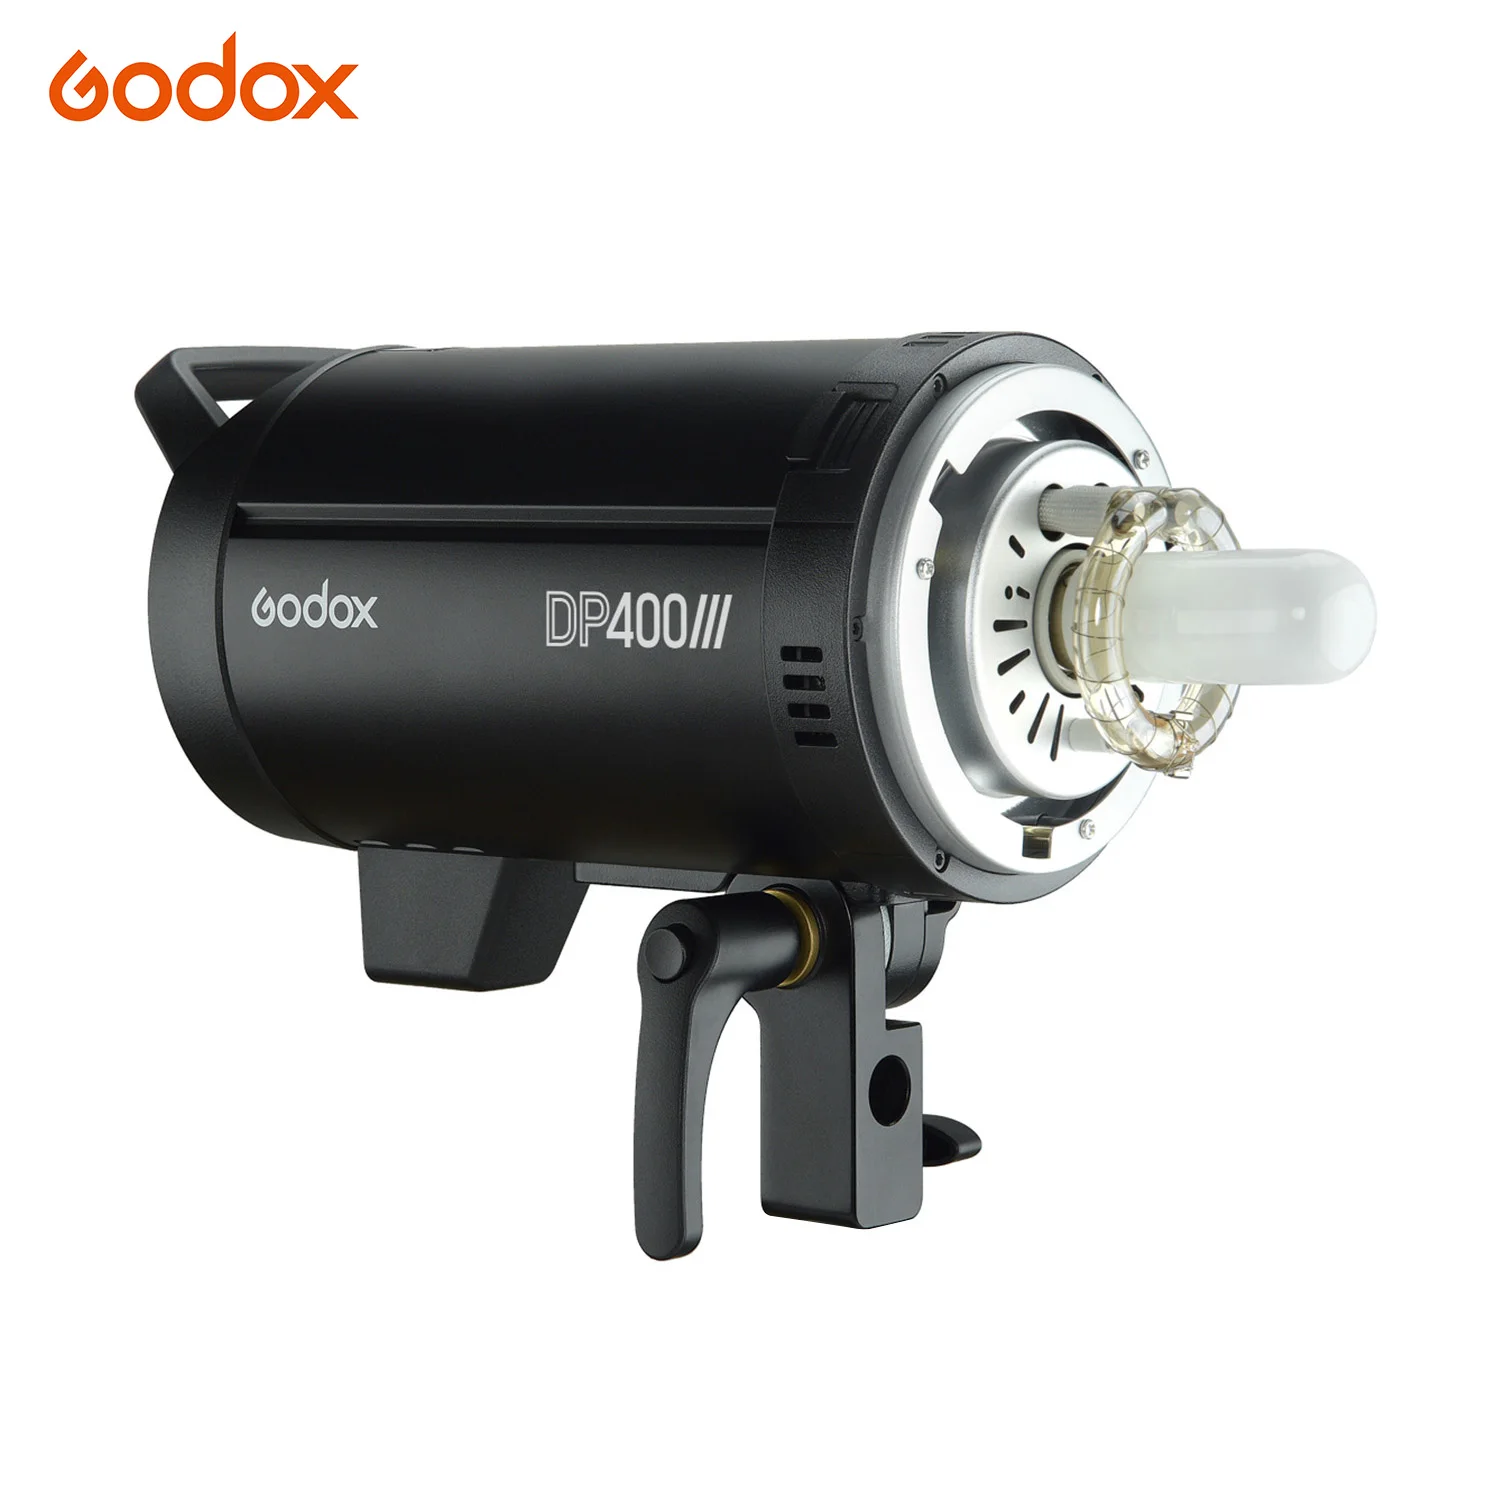 

Godox DP400III студийная вспышка светильник 400Ws 2,4G Беспроводной X Системы мерцающий светильник Bowens Mount 5600K фотографии вспышки для съемки